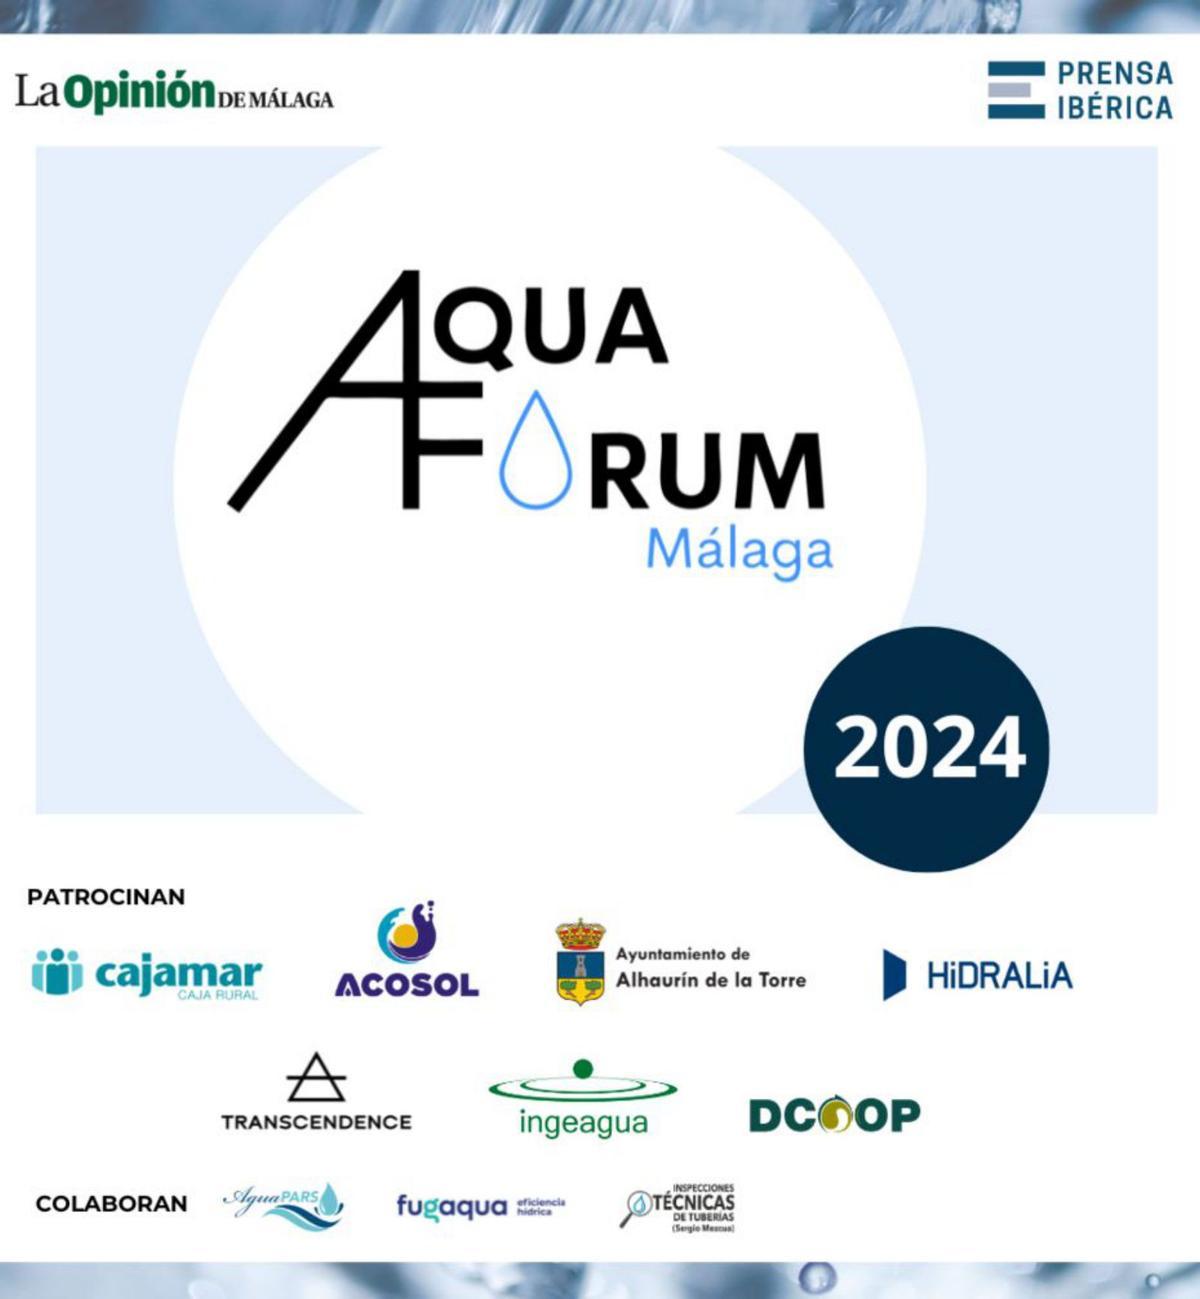 La Opinión de Málaga organiza la segunda edición de Aquaforum